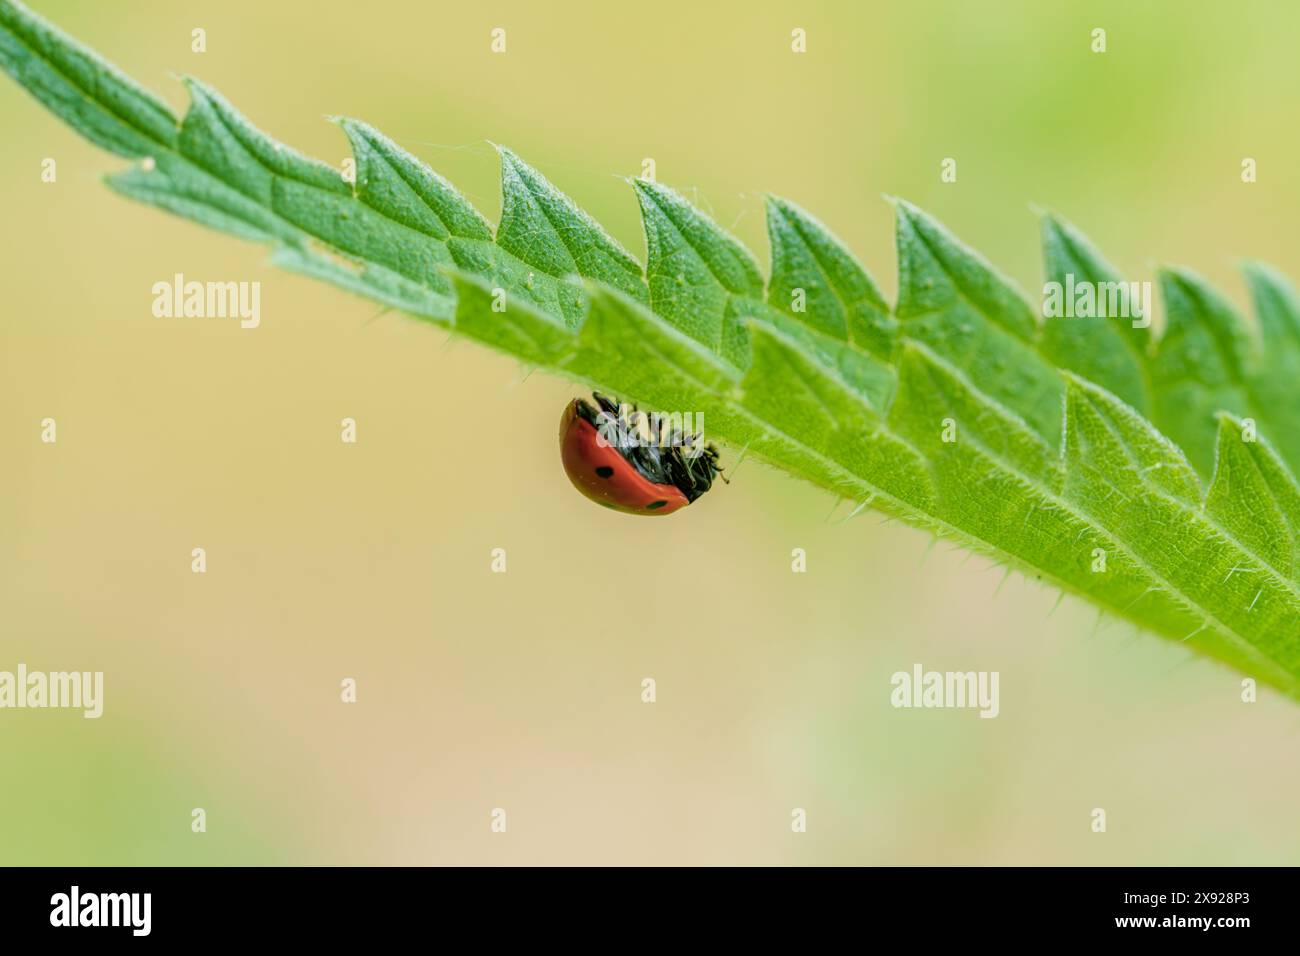 Une coccinelle, un insecte, est perchée sur une feuille verte. Cet arthropode, un pollinisateur, peut être trouvé sur les plantes, ajoutant de la couleur. Les coccinelles, aussi les coléoptères, aident l'esprit Banque D'Images